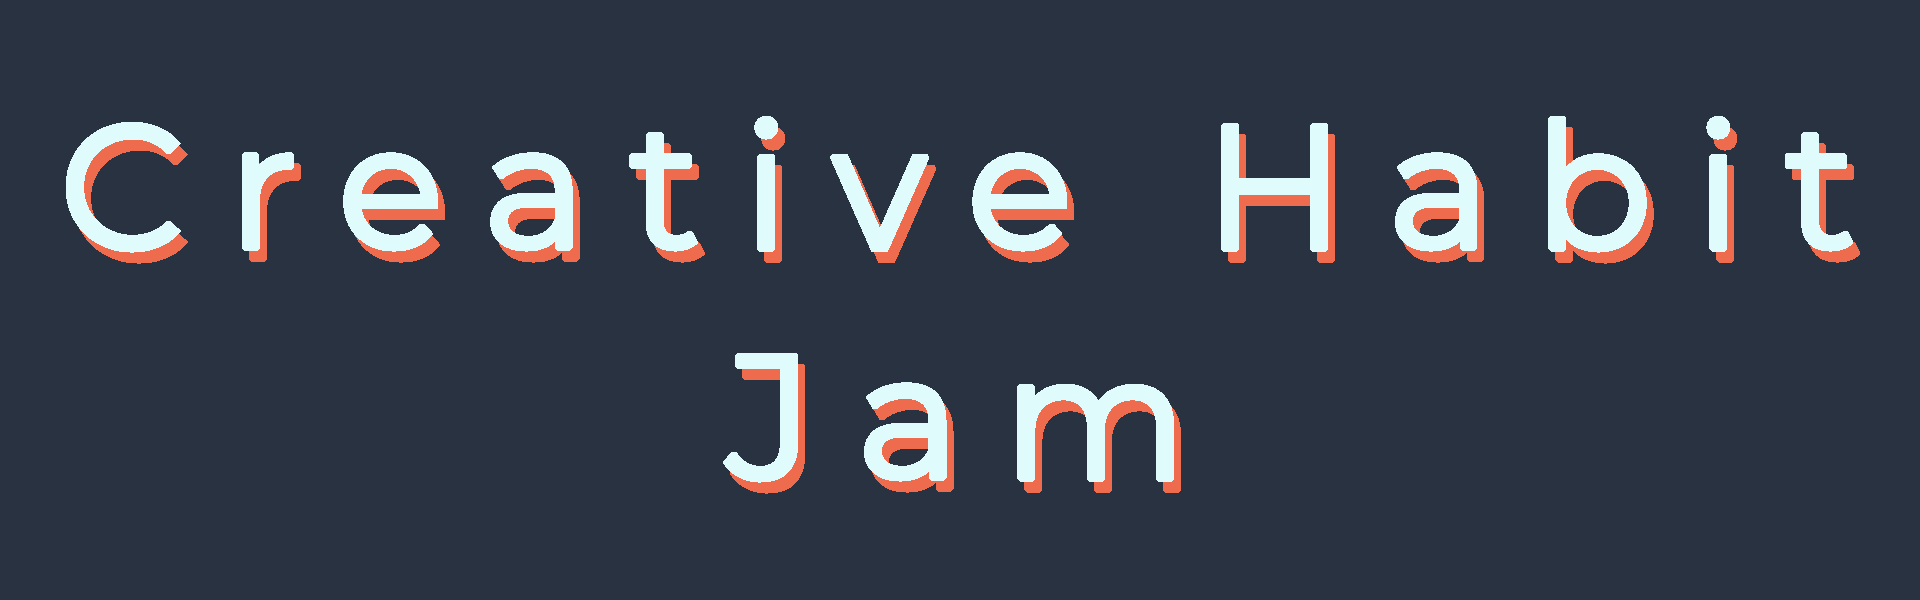 Creative Habit Jam